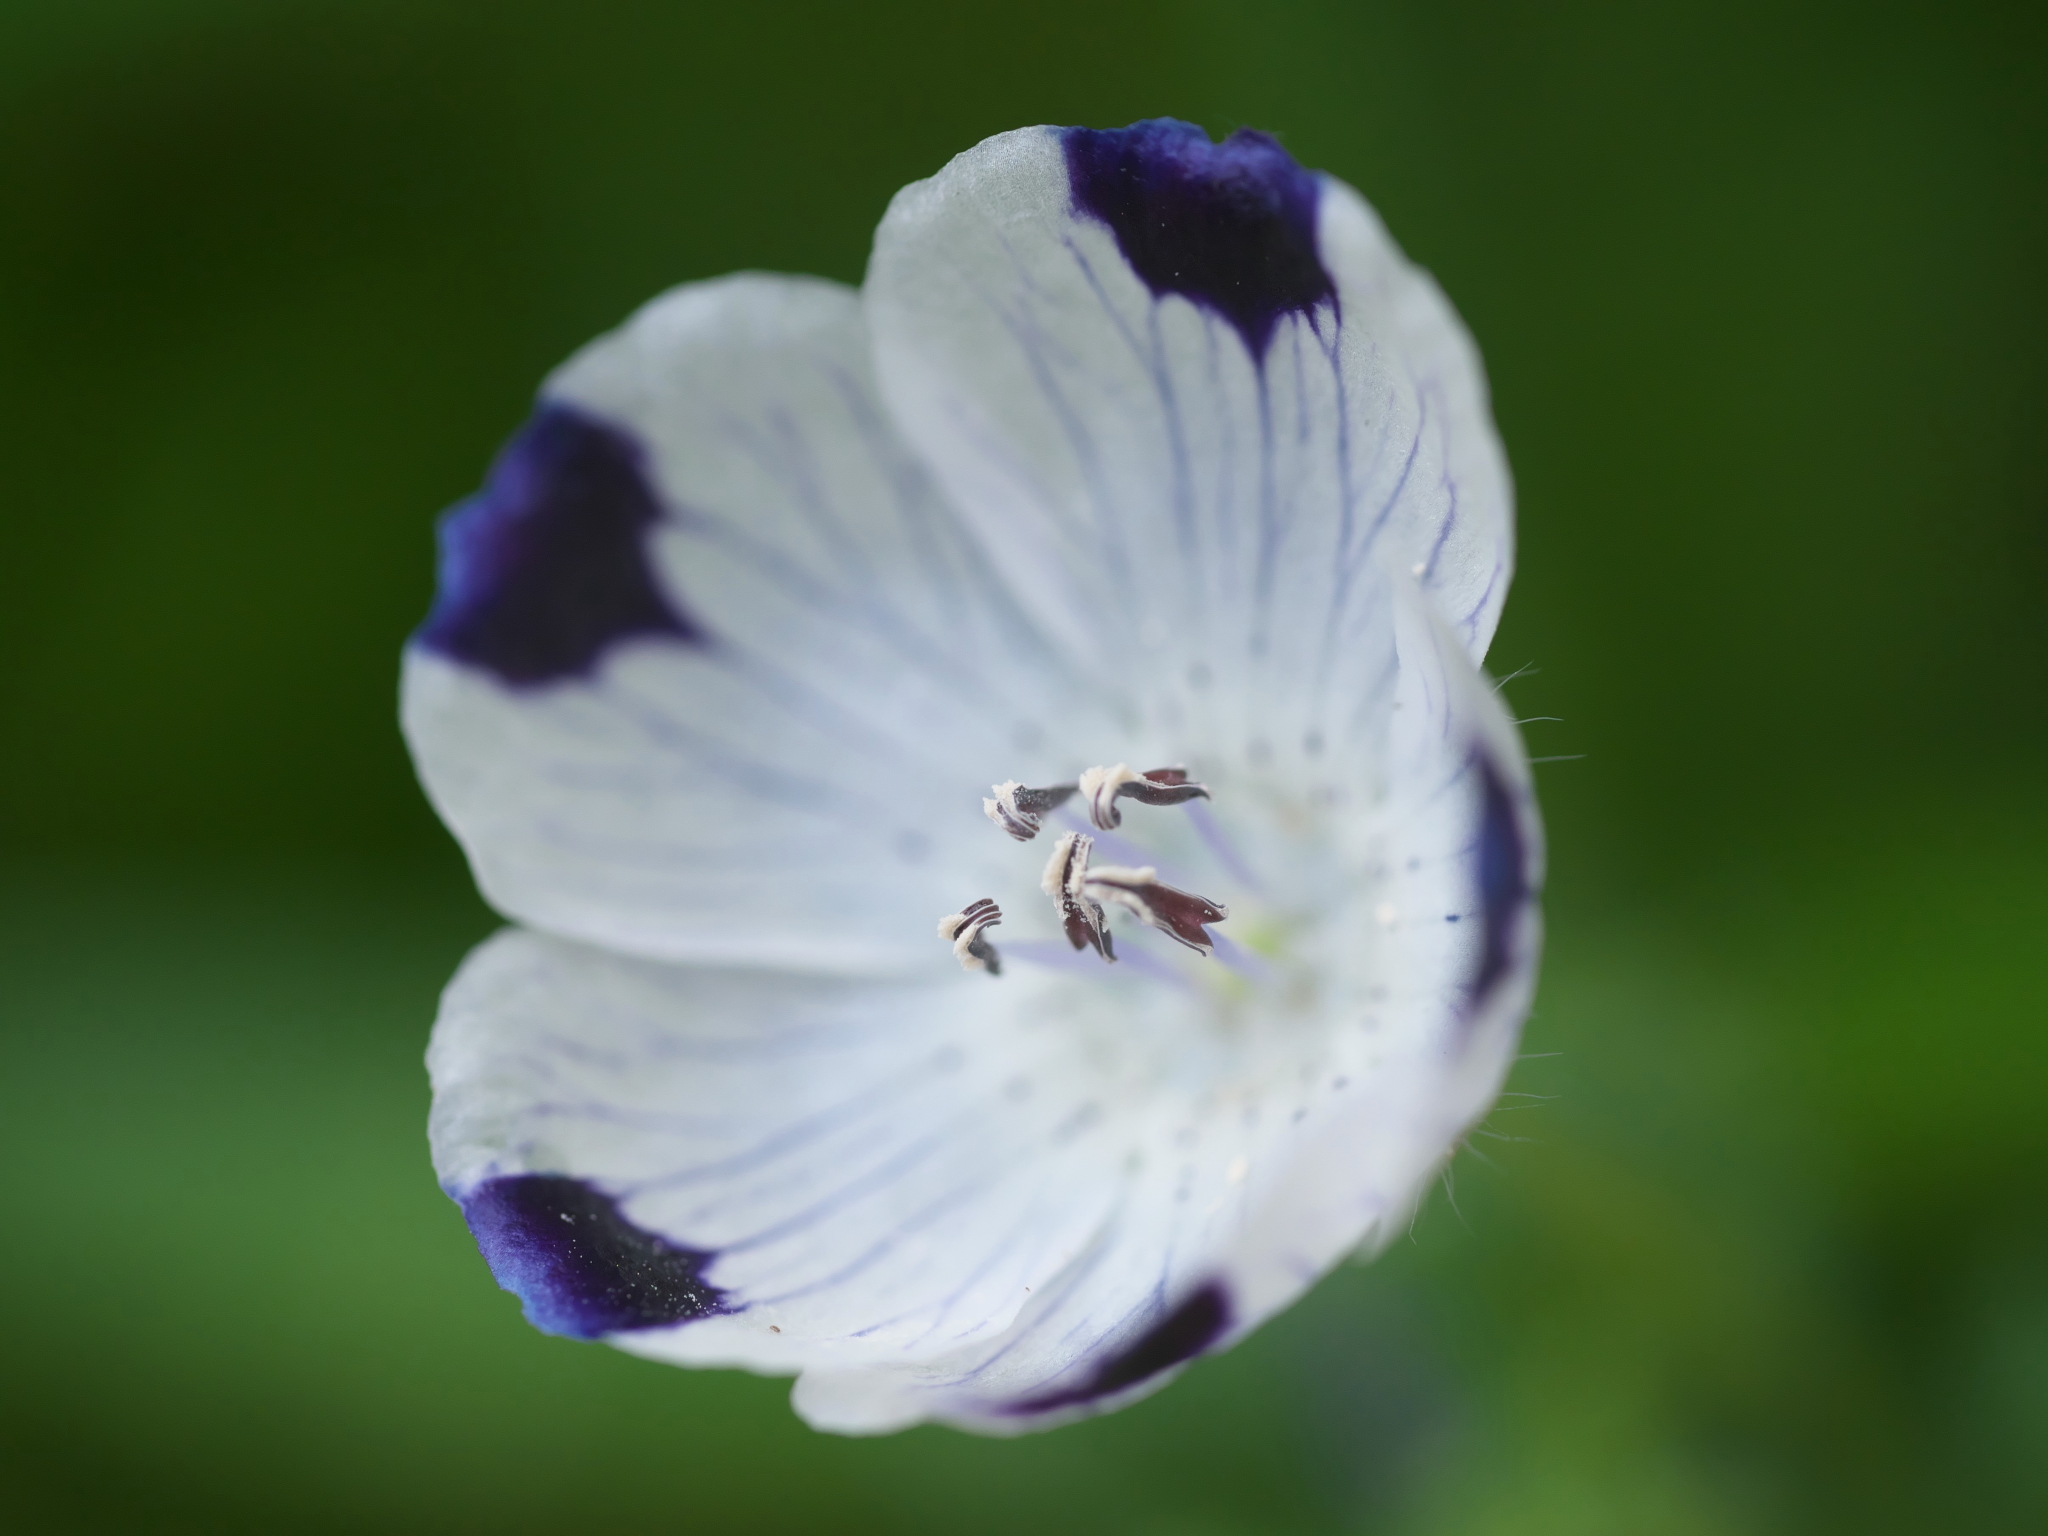 メルシーヤナイ まだまだ咲いてるネモフィラ ブルーの ネモフィラ メンジェシー 紫のアクセントの入る ネモフィラ マキュラータ キリトリセカイ マクロレンズ ファインダー越しの私の世界 Tlを花でいっぱいにしよう T Co Kesp8hevrv